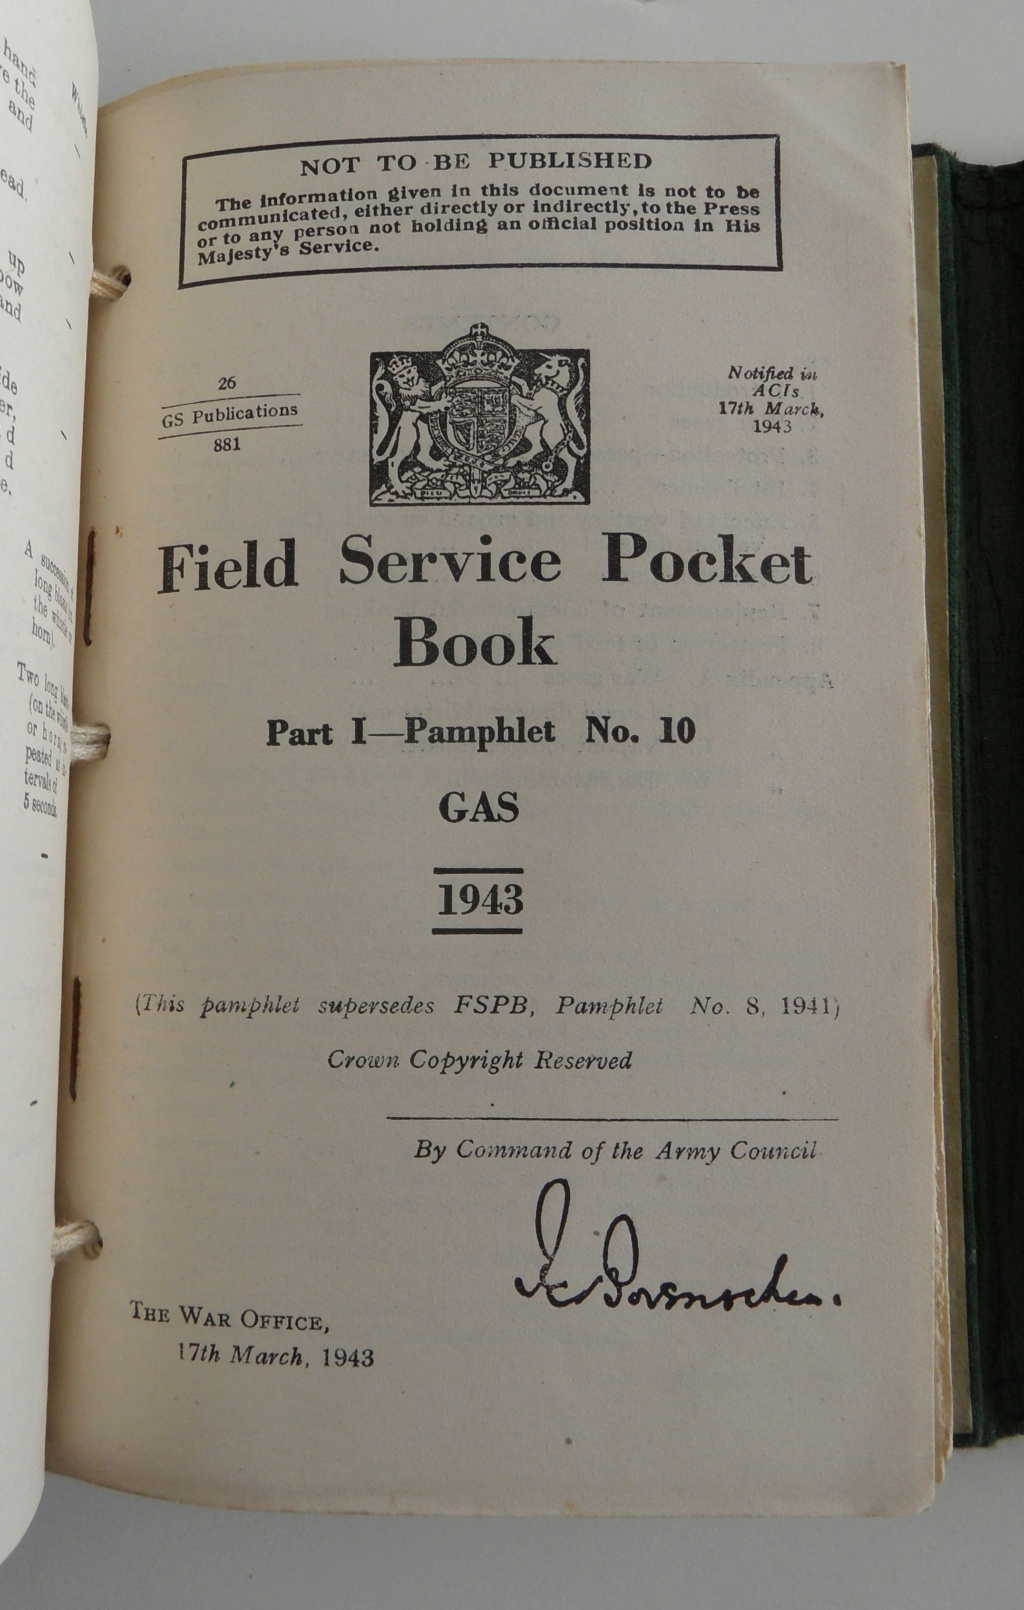 Ensemble de livrets anglais Service pocket book avec couverture spécifique au royal engineers - 35 euro Sam_6988